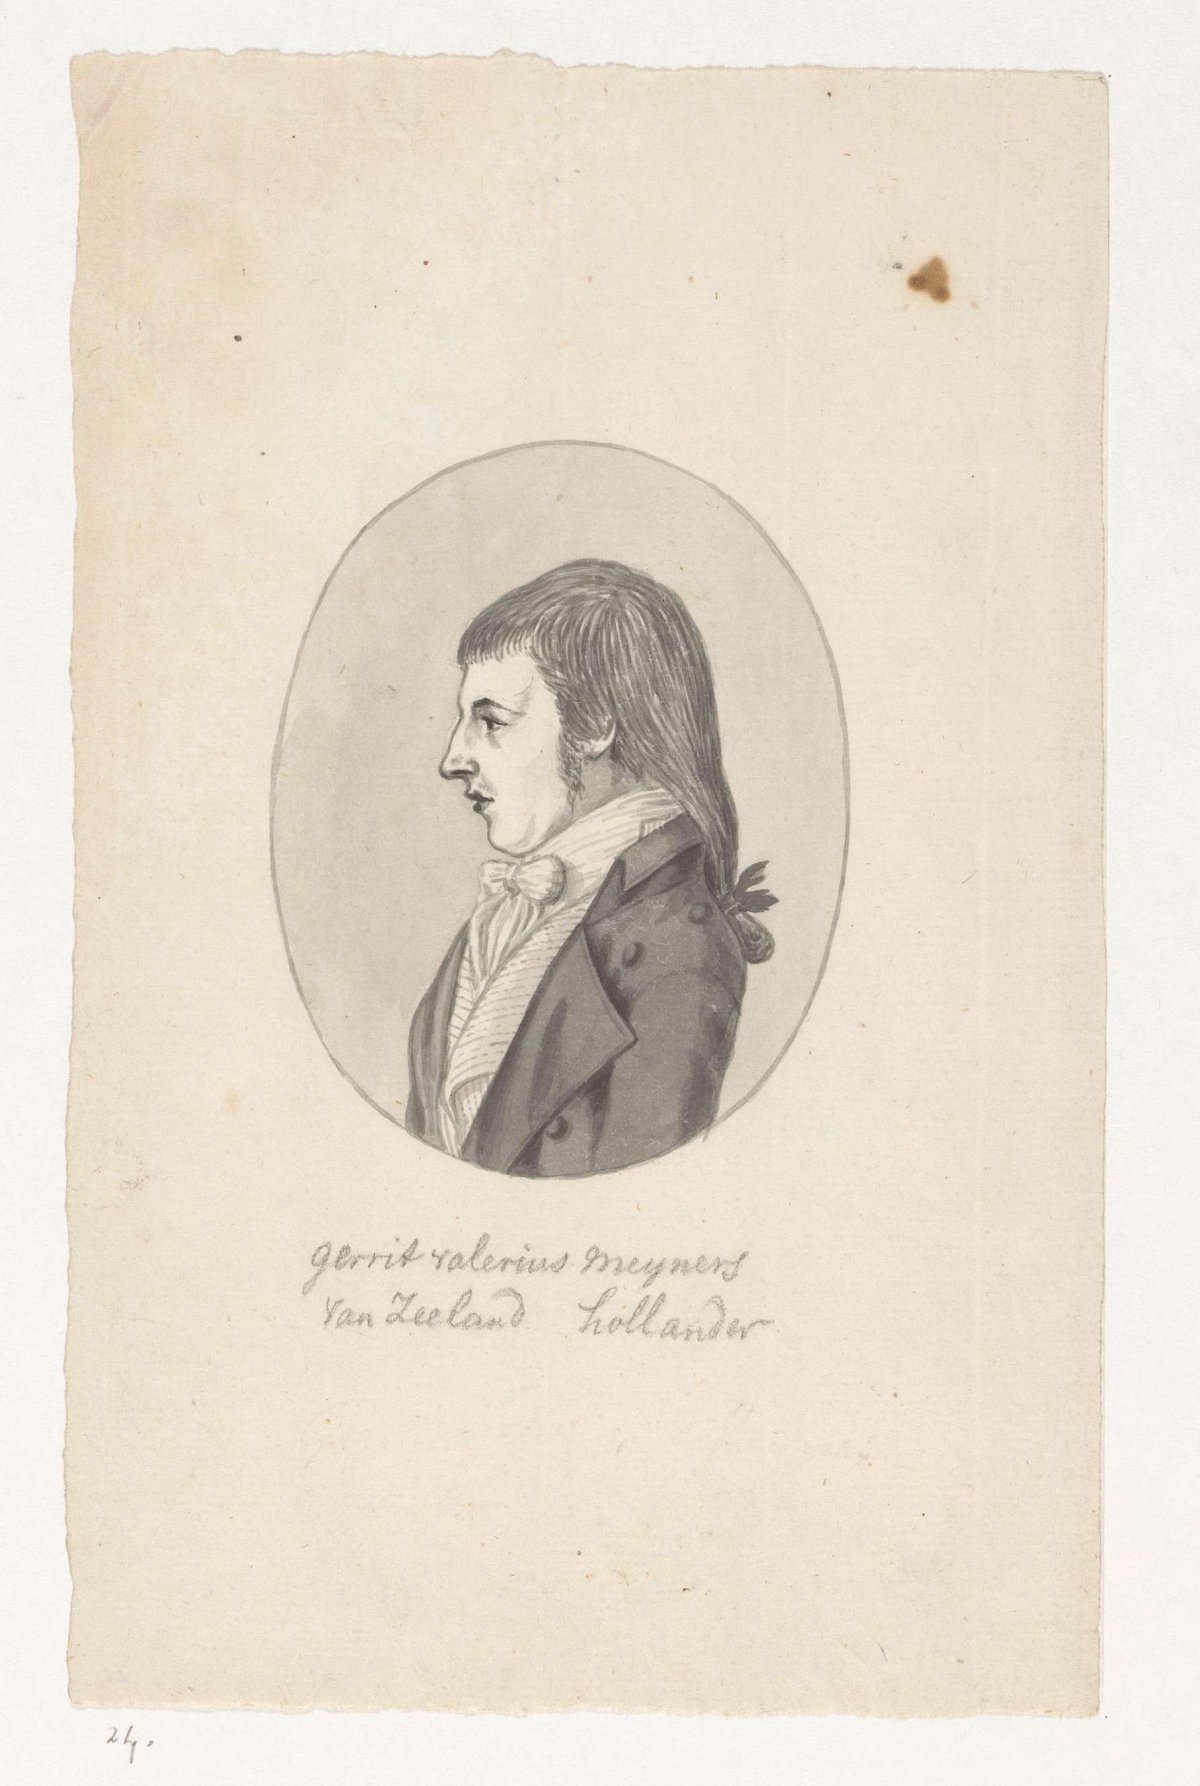 Portrait of Gerrit Valerius Meyners, Jan Brandes, 1770 - 1787